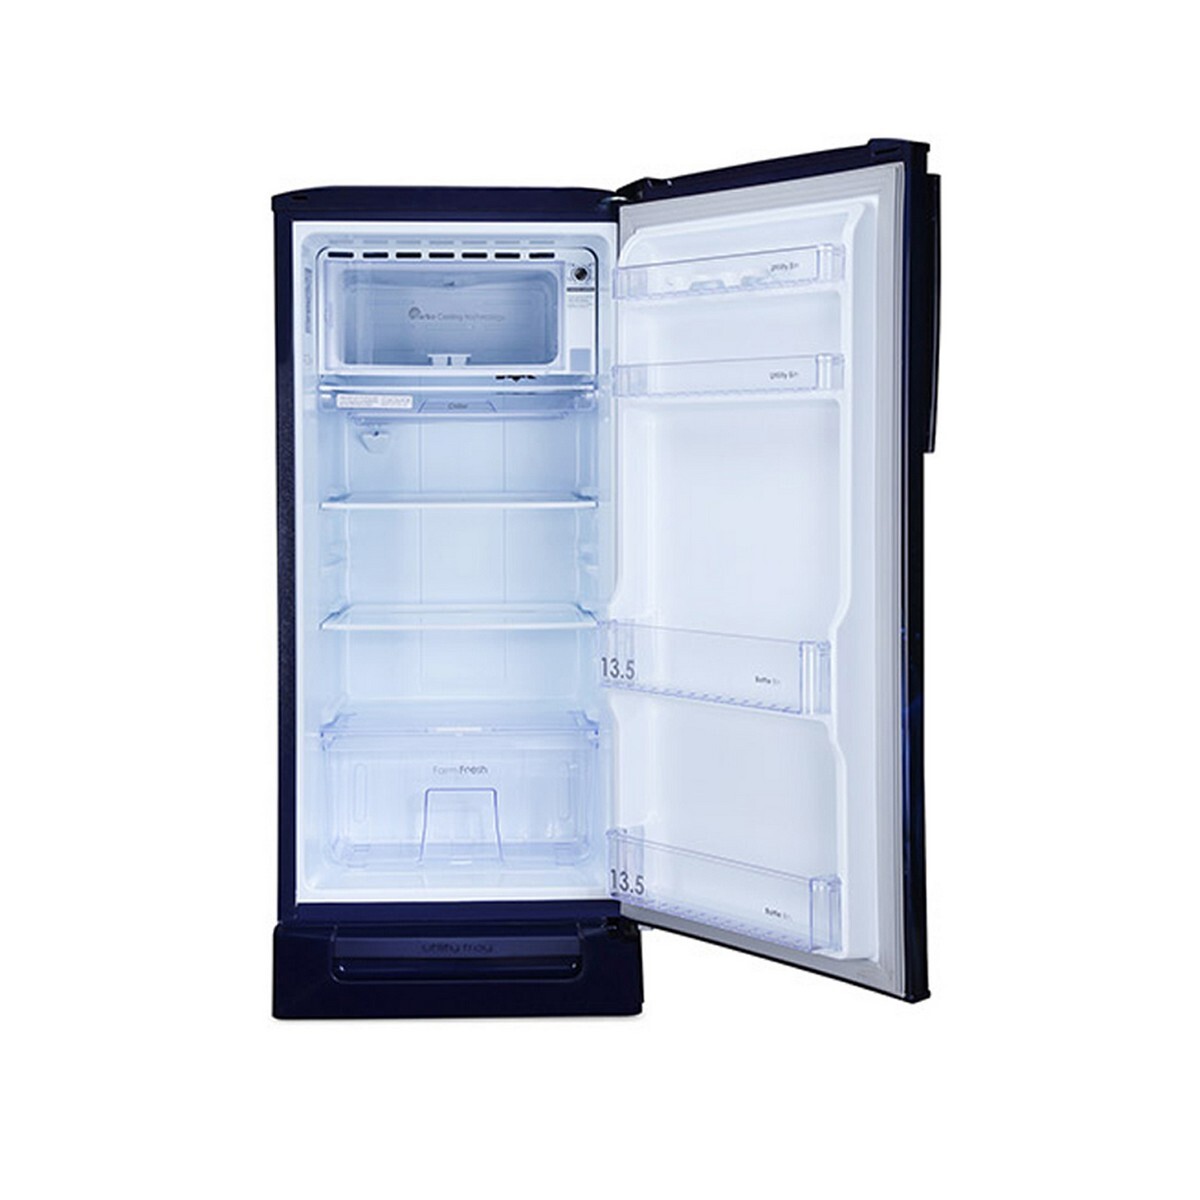 Godrej Direct Cool Refrigirator RD EDGENEO 207B 23 THF BH BL